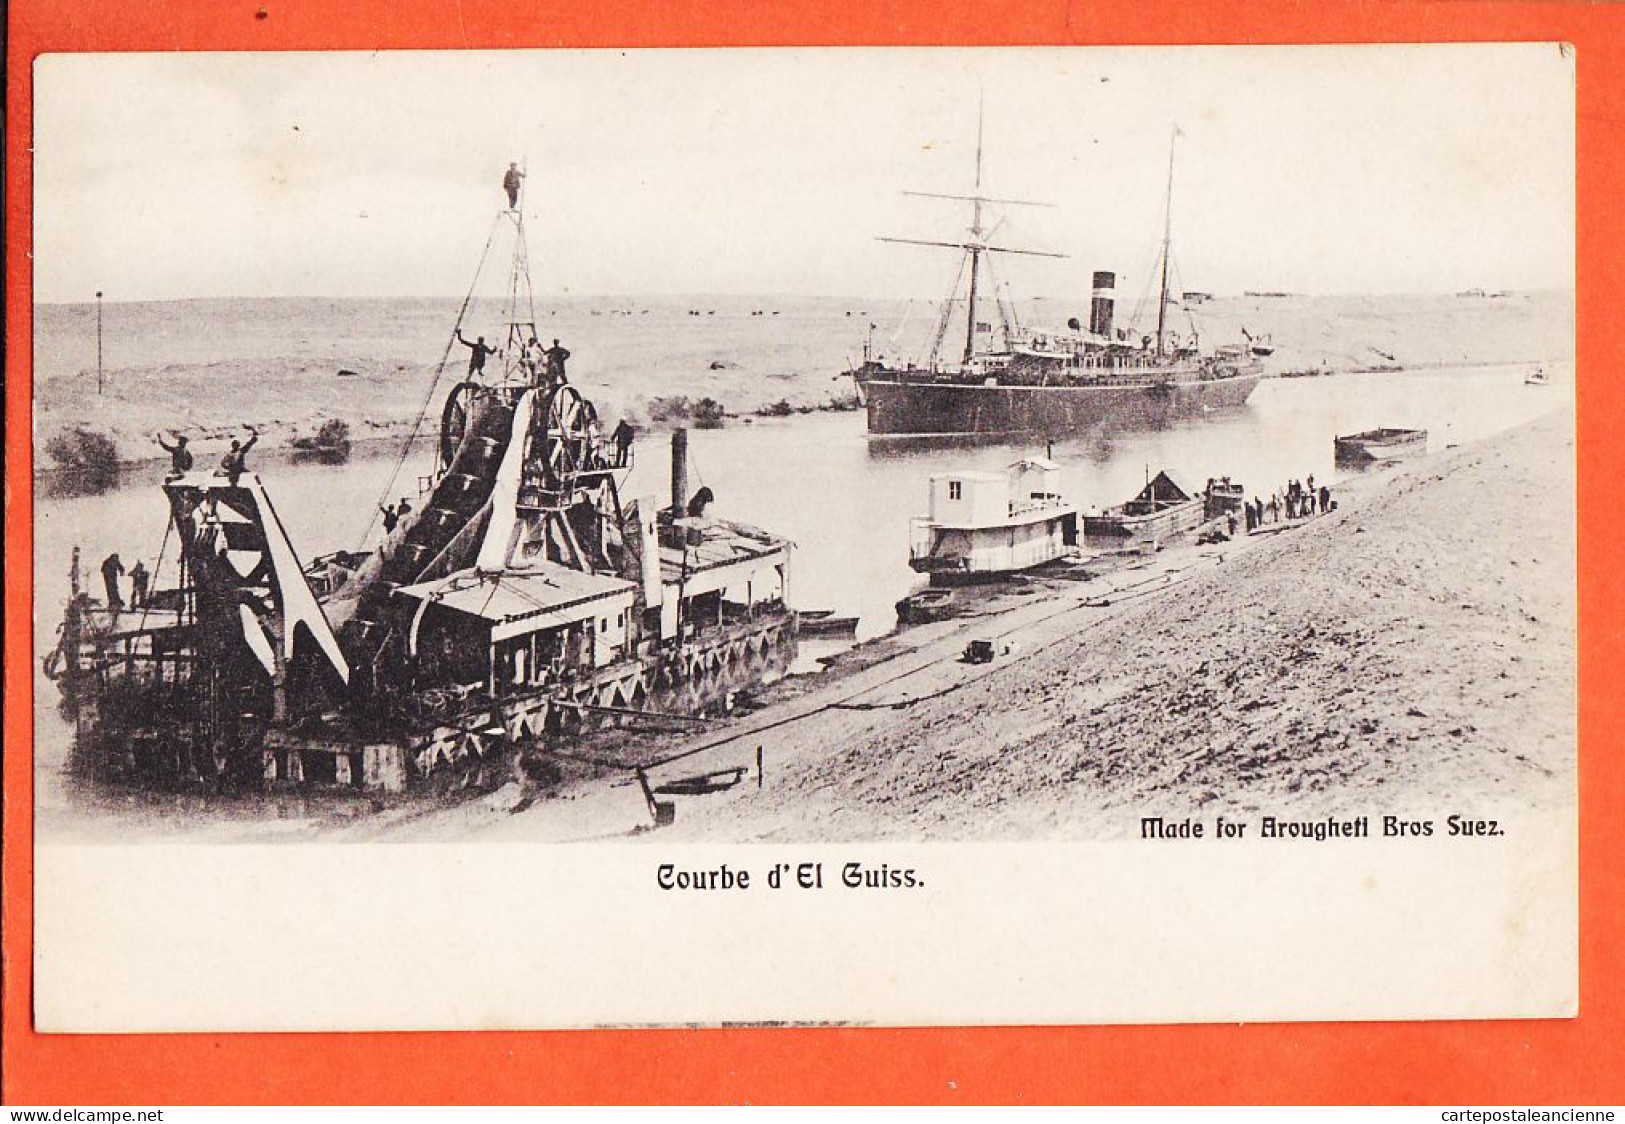 33858 / ⭐ Canal SUEZ Egypte Courbe EL GUISS Barge Dragage Drague à Deversoir Paquebot 1900s-BROUGHETTI Bross Egypt - Sues